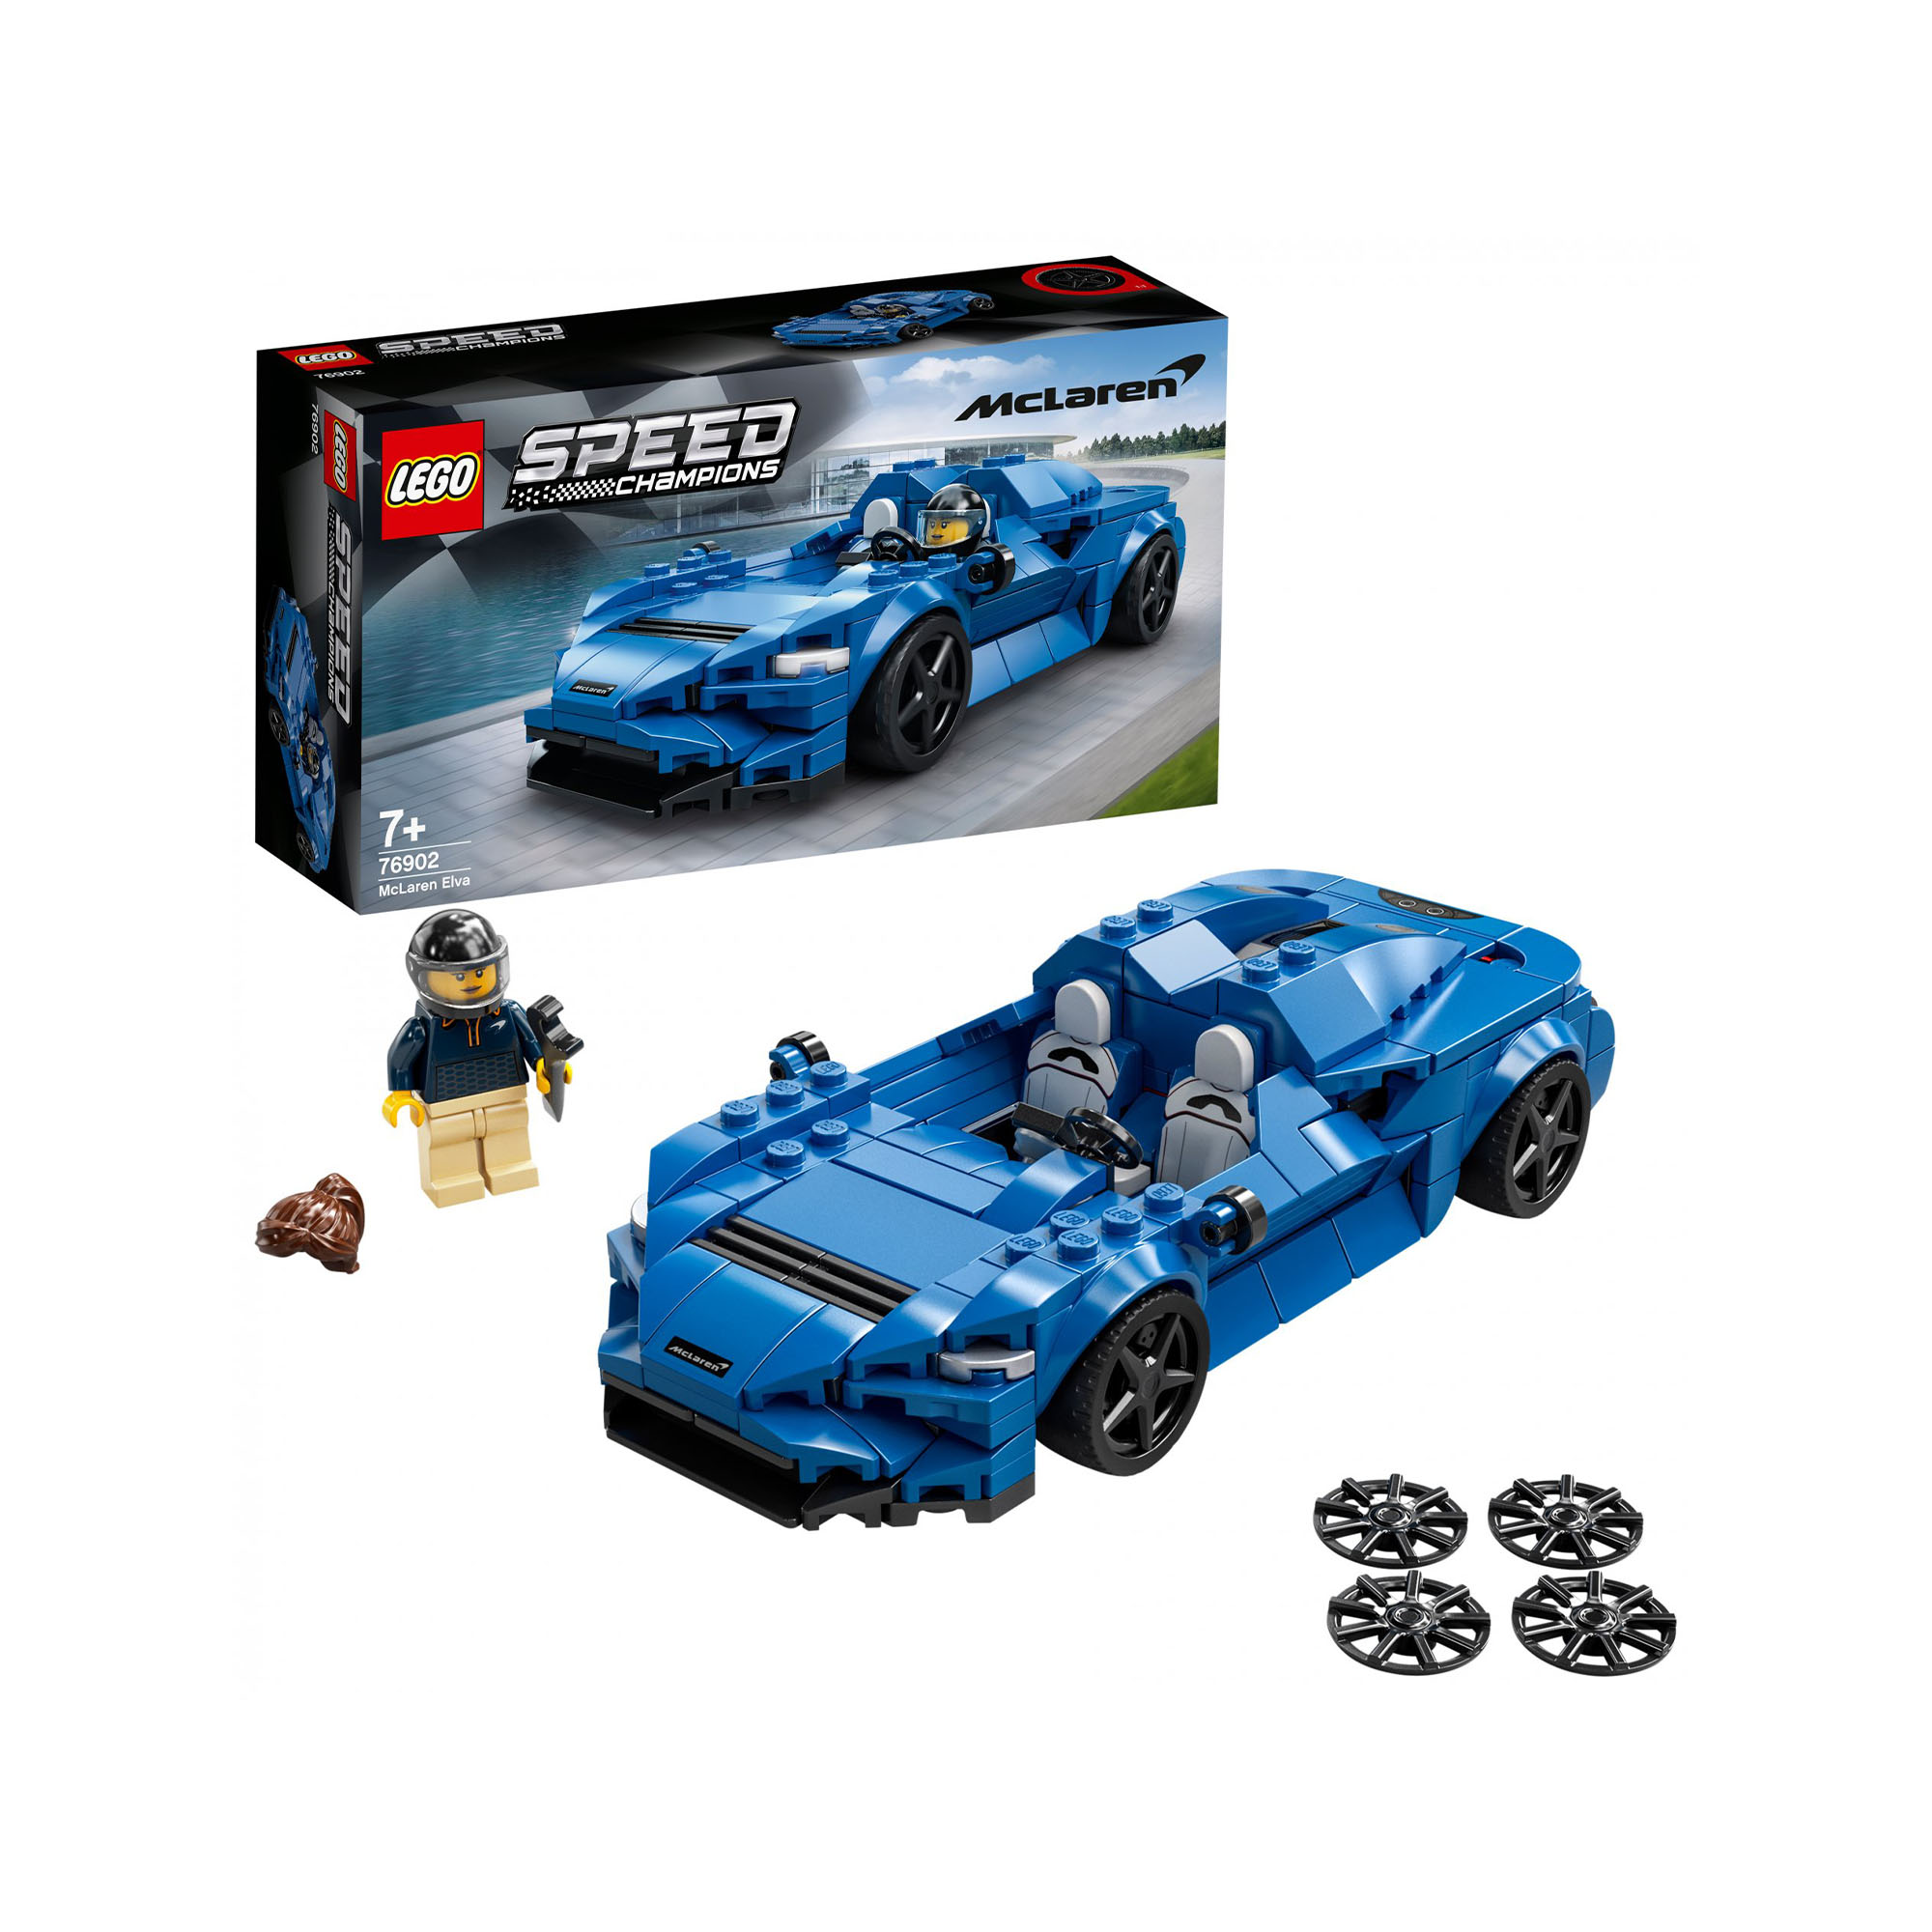 LEGO Speed Champions McLaren Elva, Macchina Giocattolo per Bambini di 7 Anni, Au 76902, , large